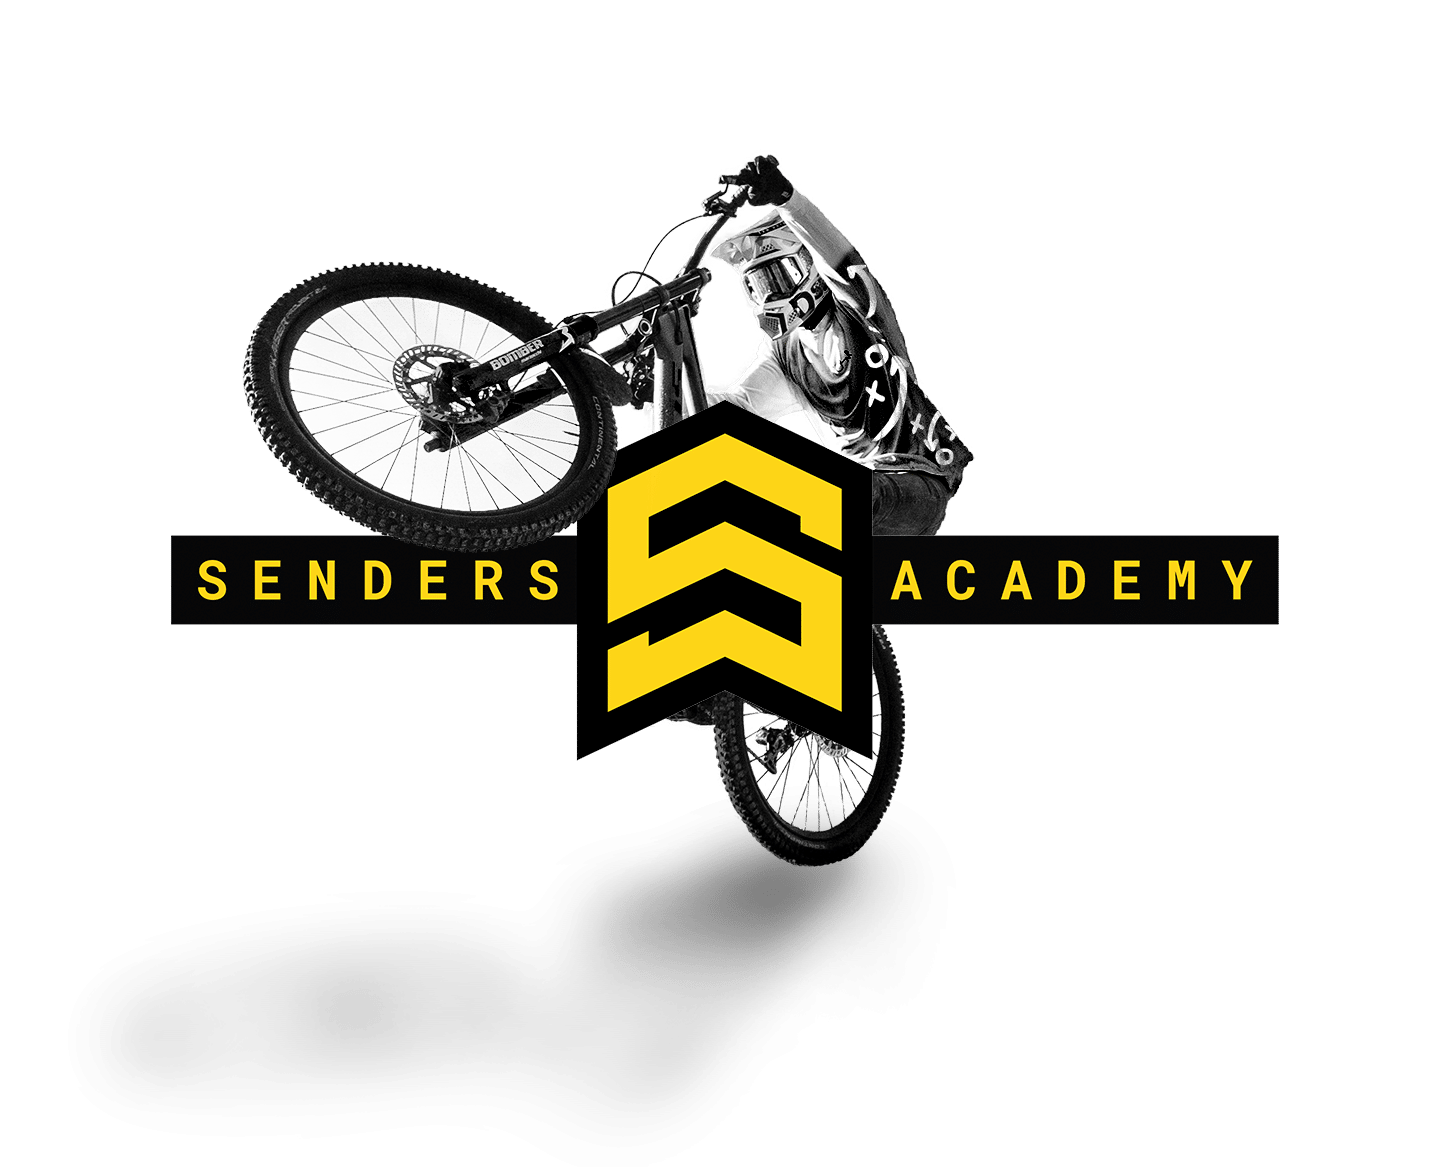 (c) Senders-academy.com